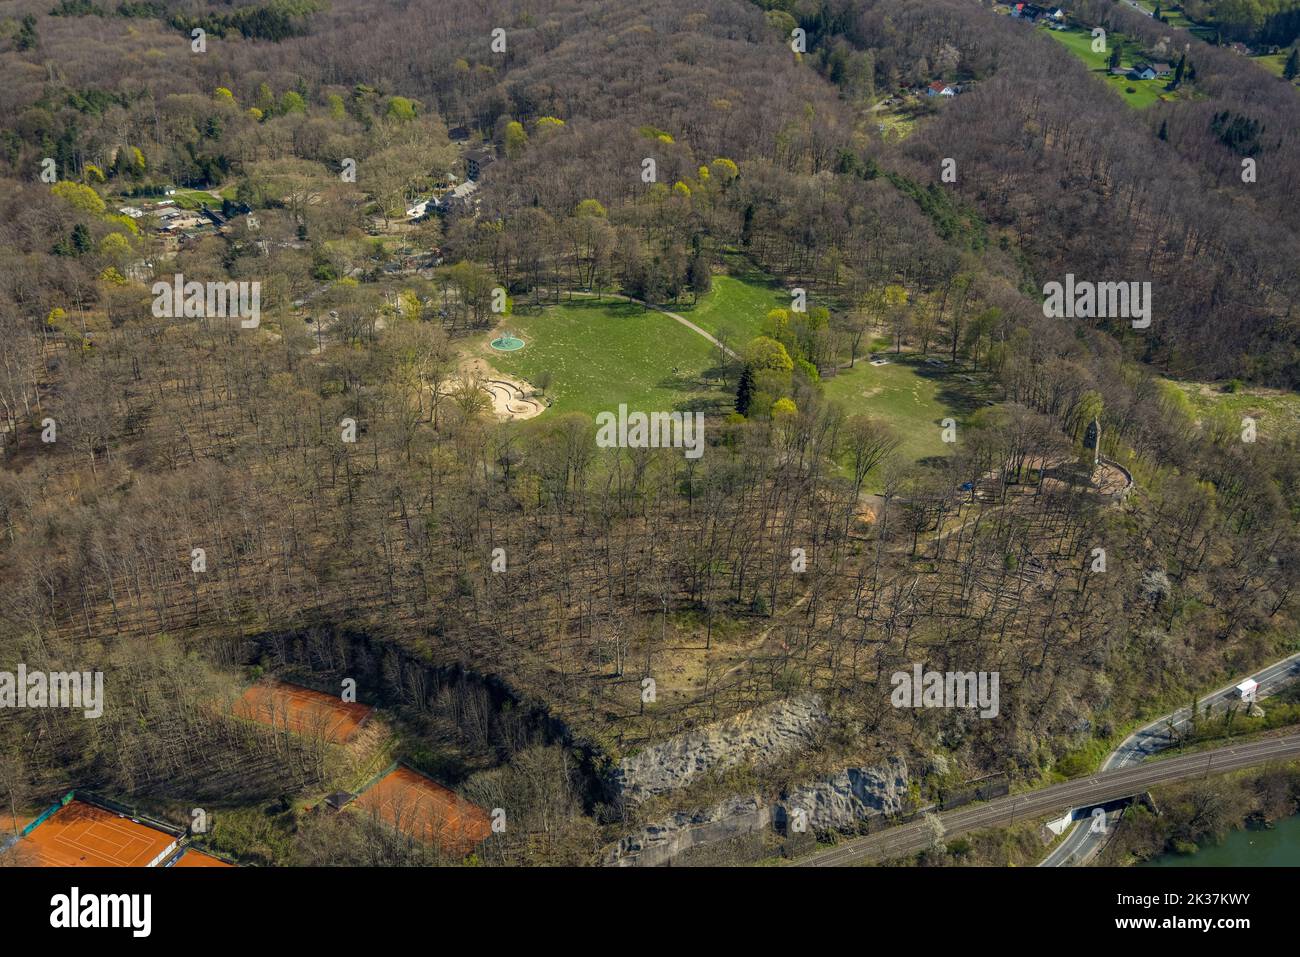 Vista aérea, área de bosque Hohenstein con monumento de montaña, césped y parque infantil, zoo de mascotas y hotel con parque, Witten, área de Ruhr, Rin del Norte Foto de stock